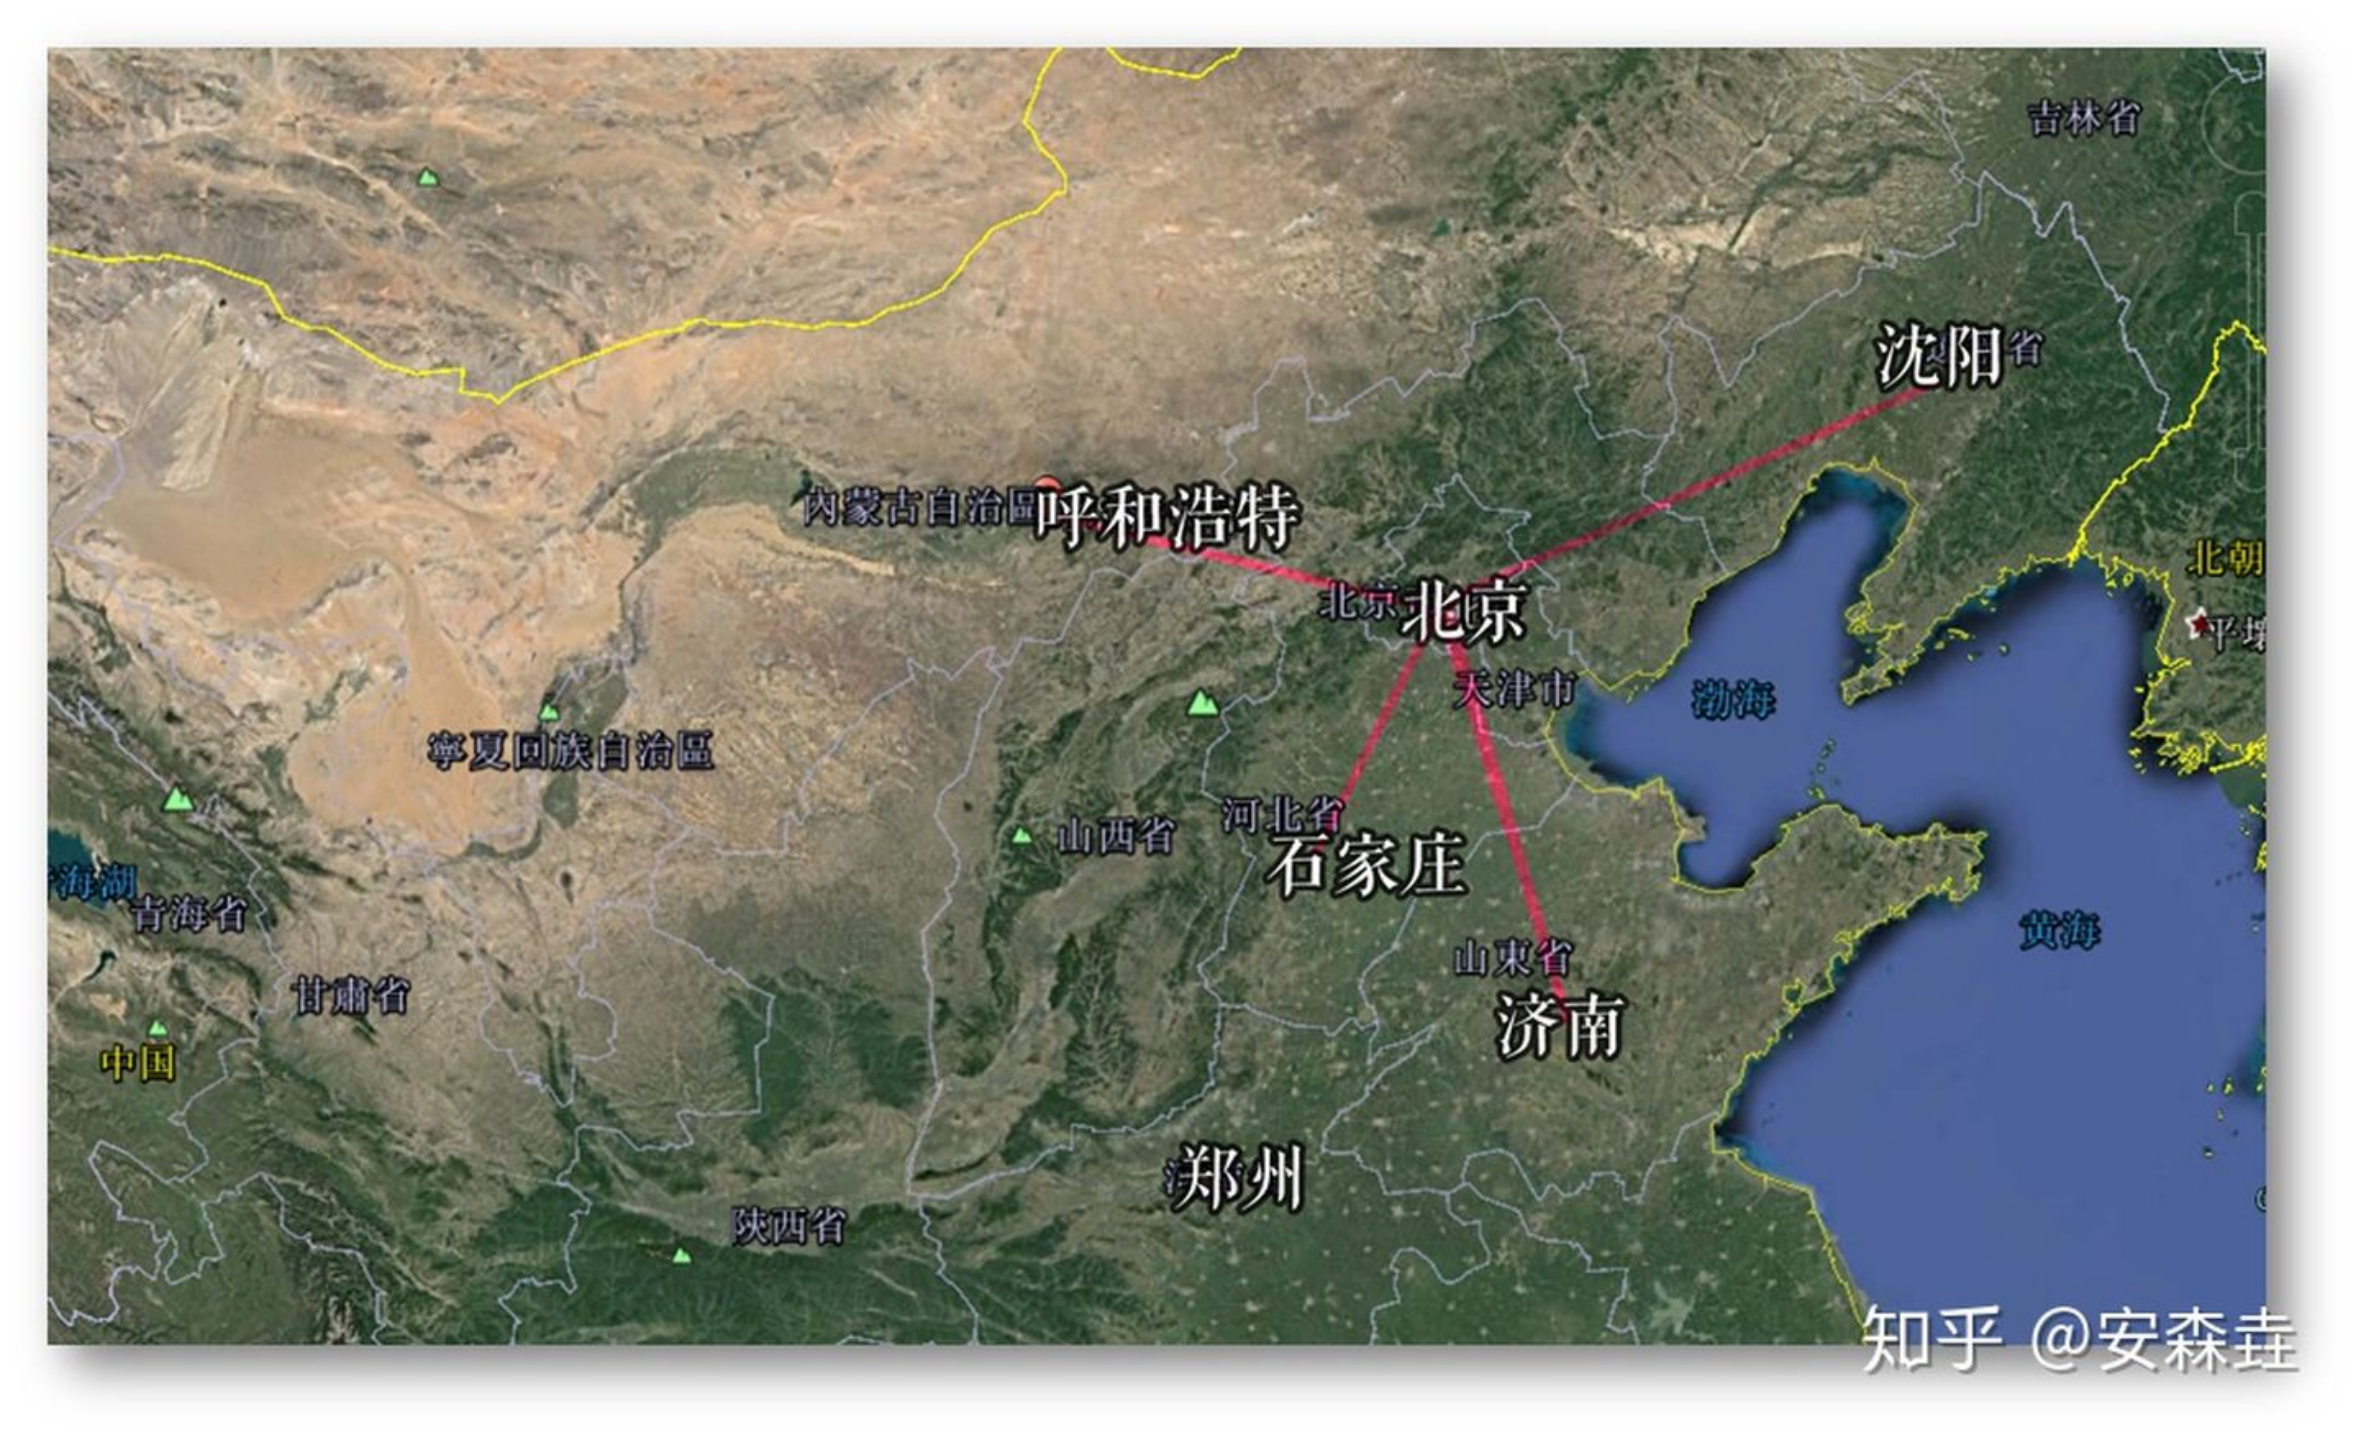 图 12：北京到蒙古、东北、华北几个方向的距离示意图